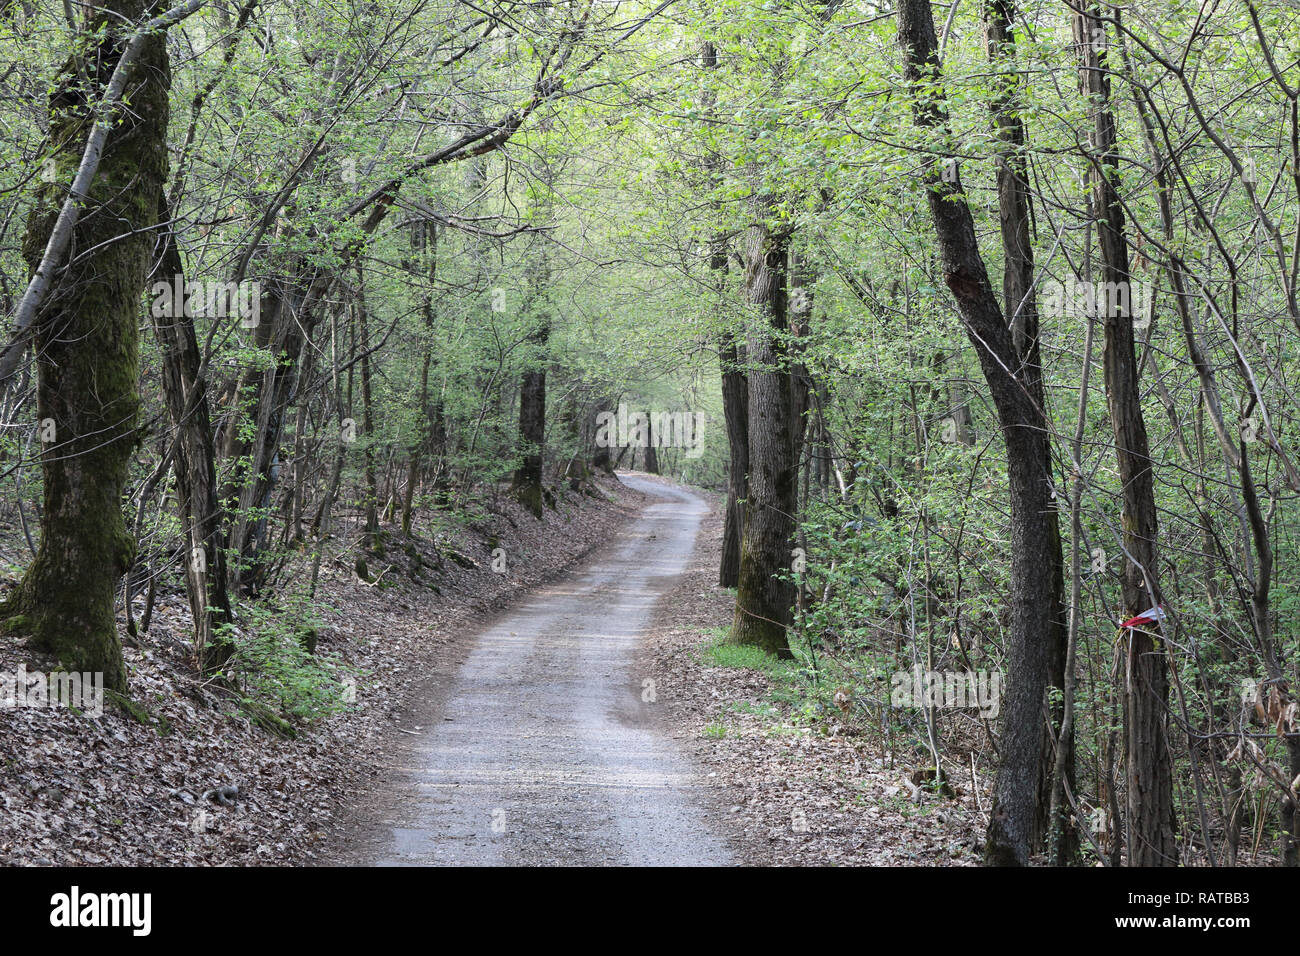 Un chemin de terre allant dans une vaste forêt de feuillus avec des bourgeons et des feuilles sèches sur le sol au printemps en Galliate, région du Piémont, Italie Banque D'Images